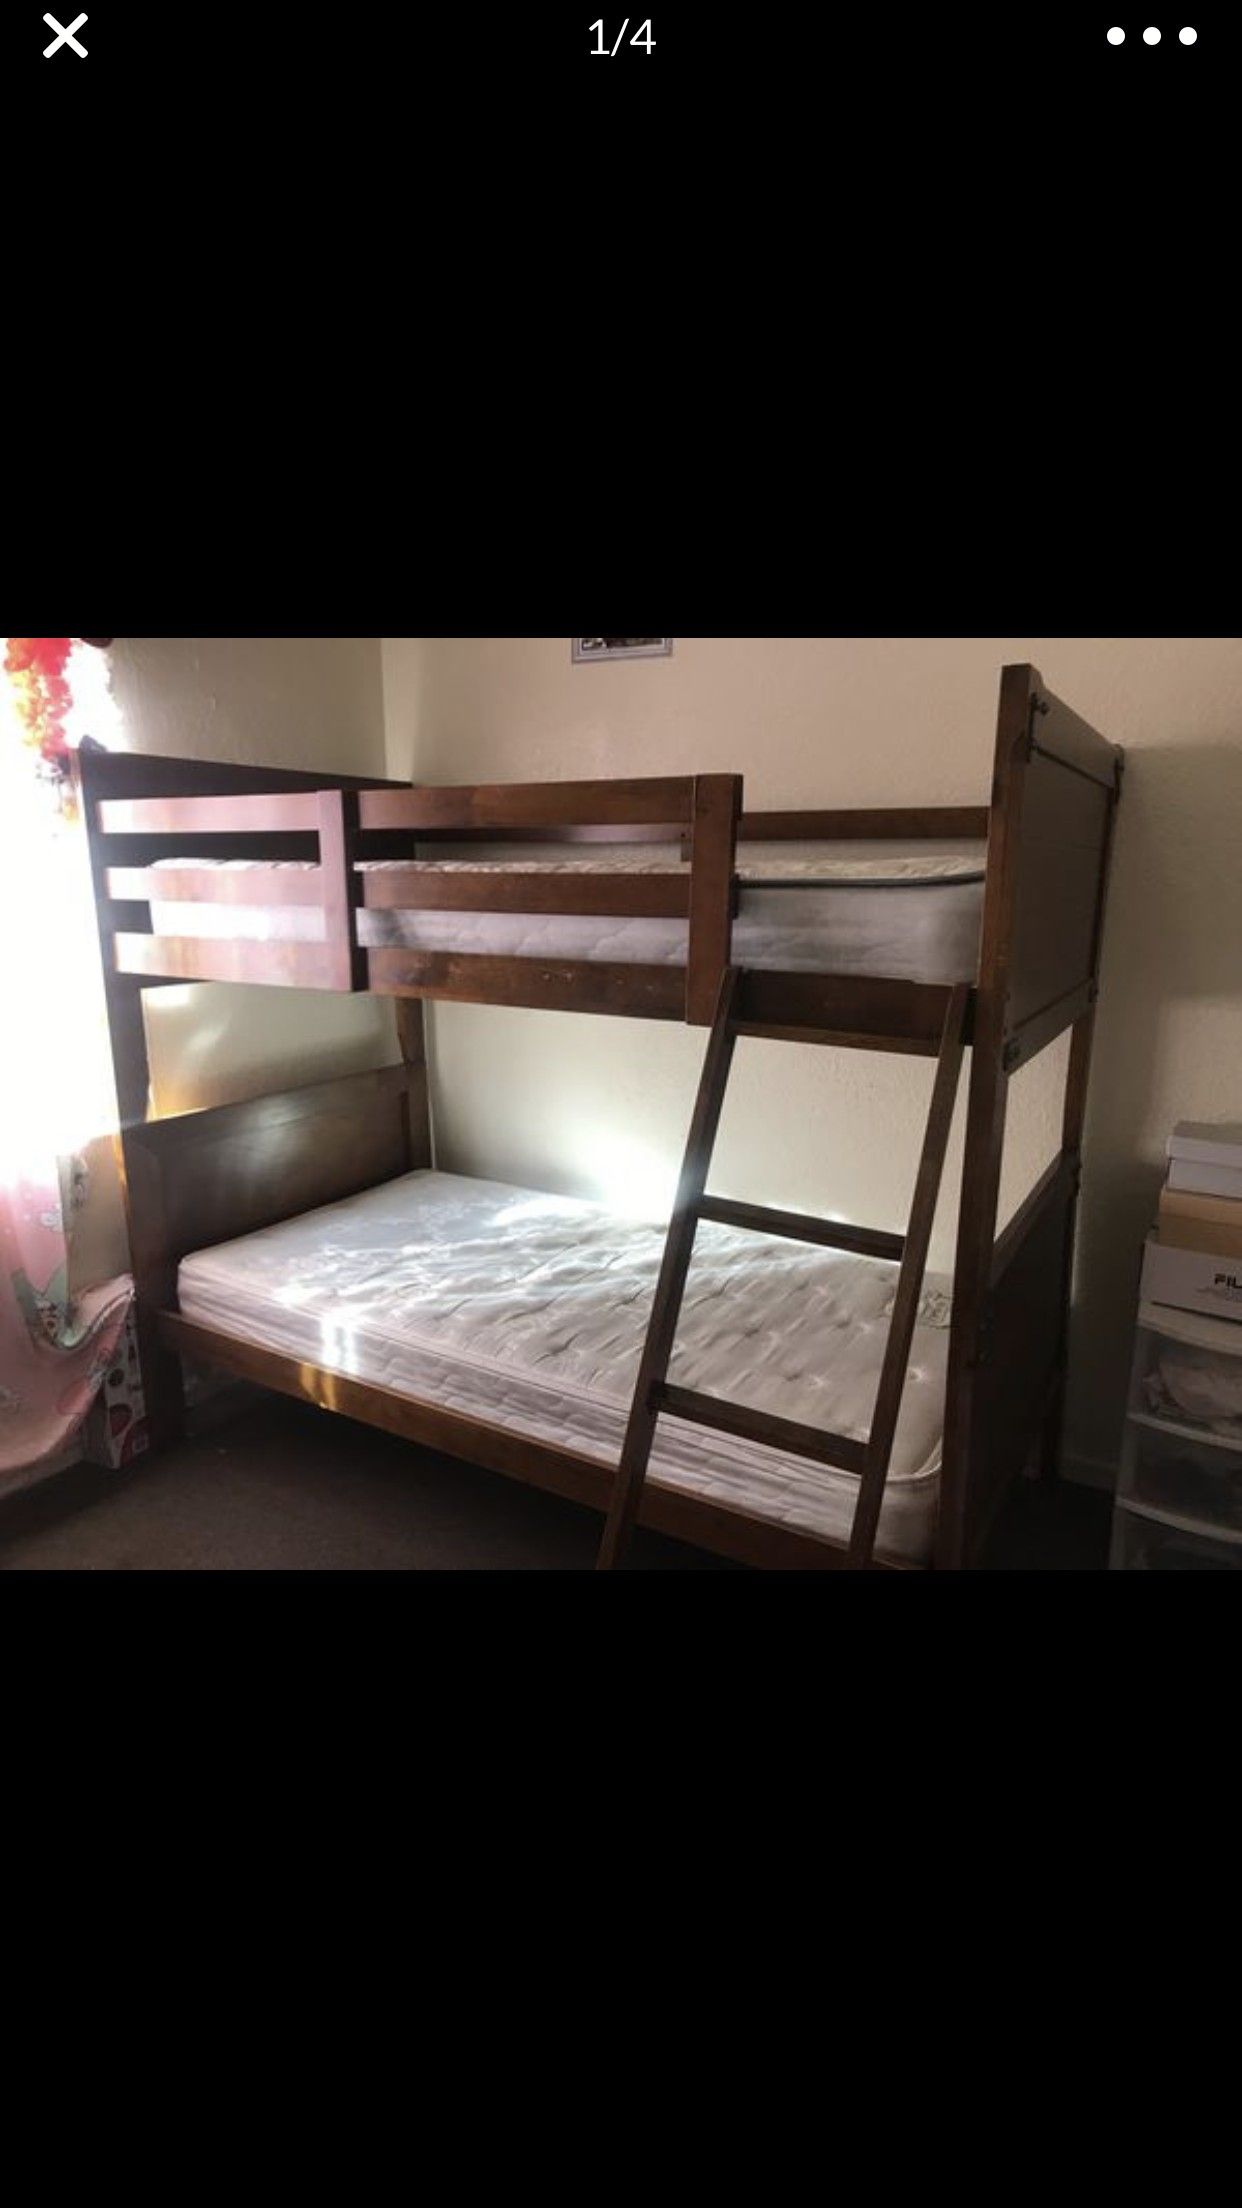 Literas en buenas condiciones/bunk beds in good condition